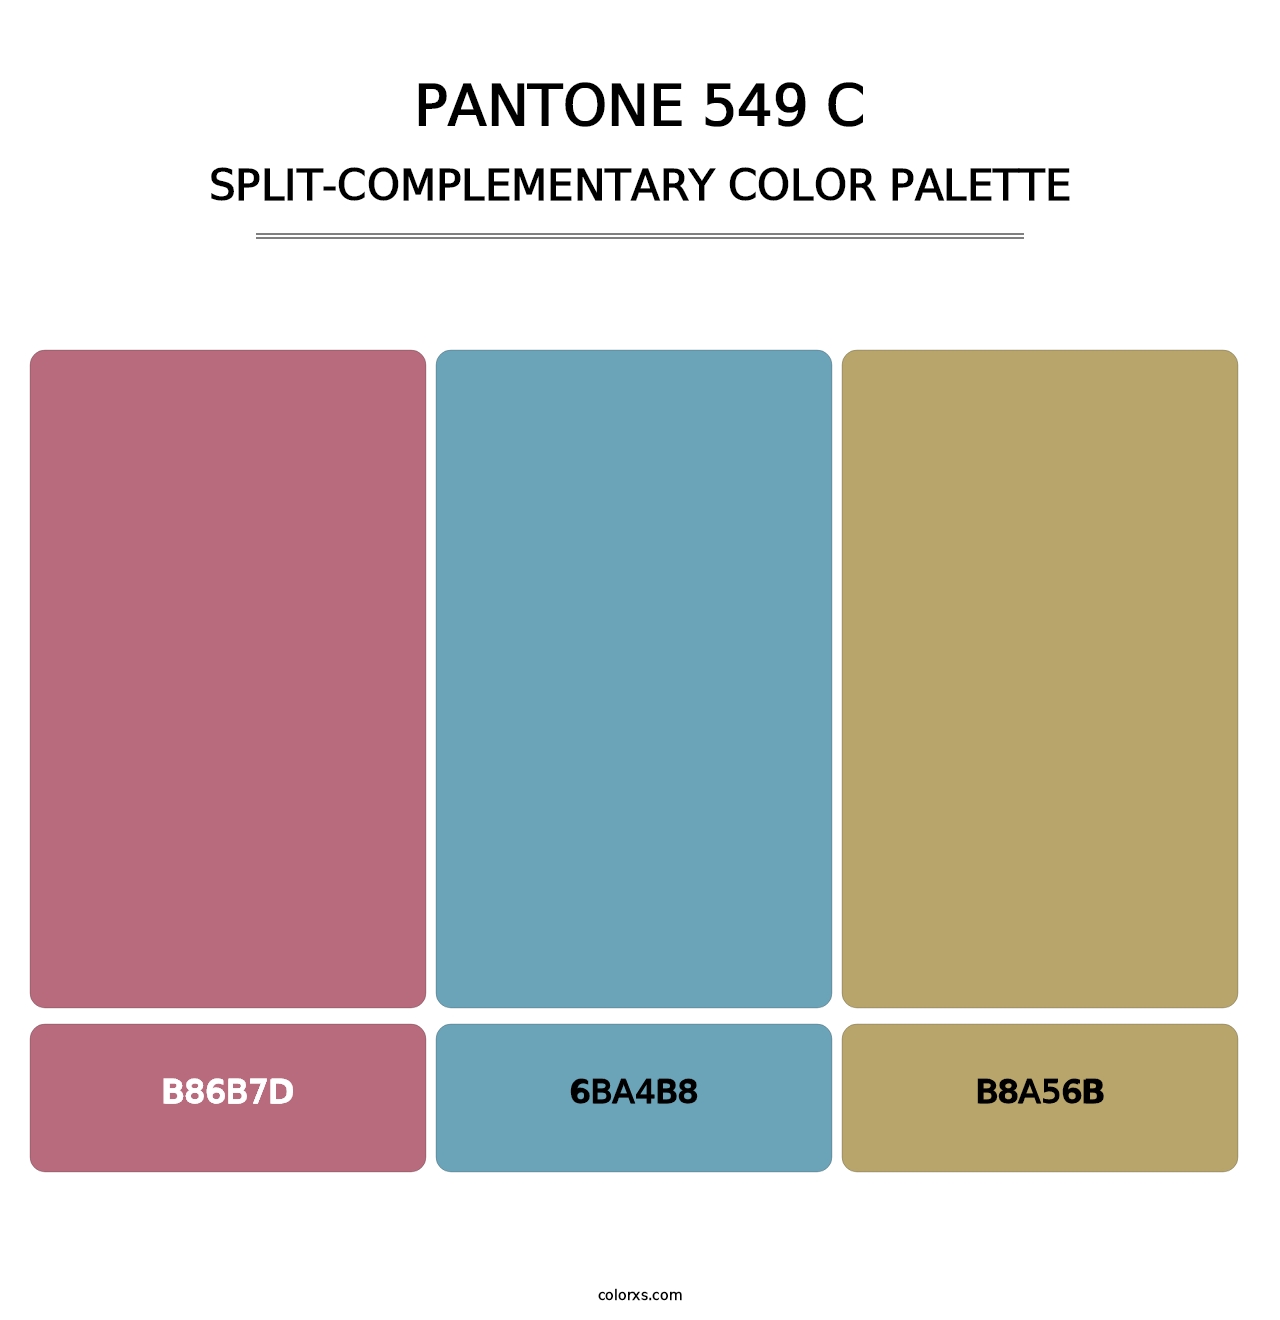 PANTONE 549 C - Split-Complementary Color Palette